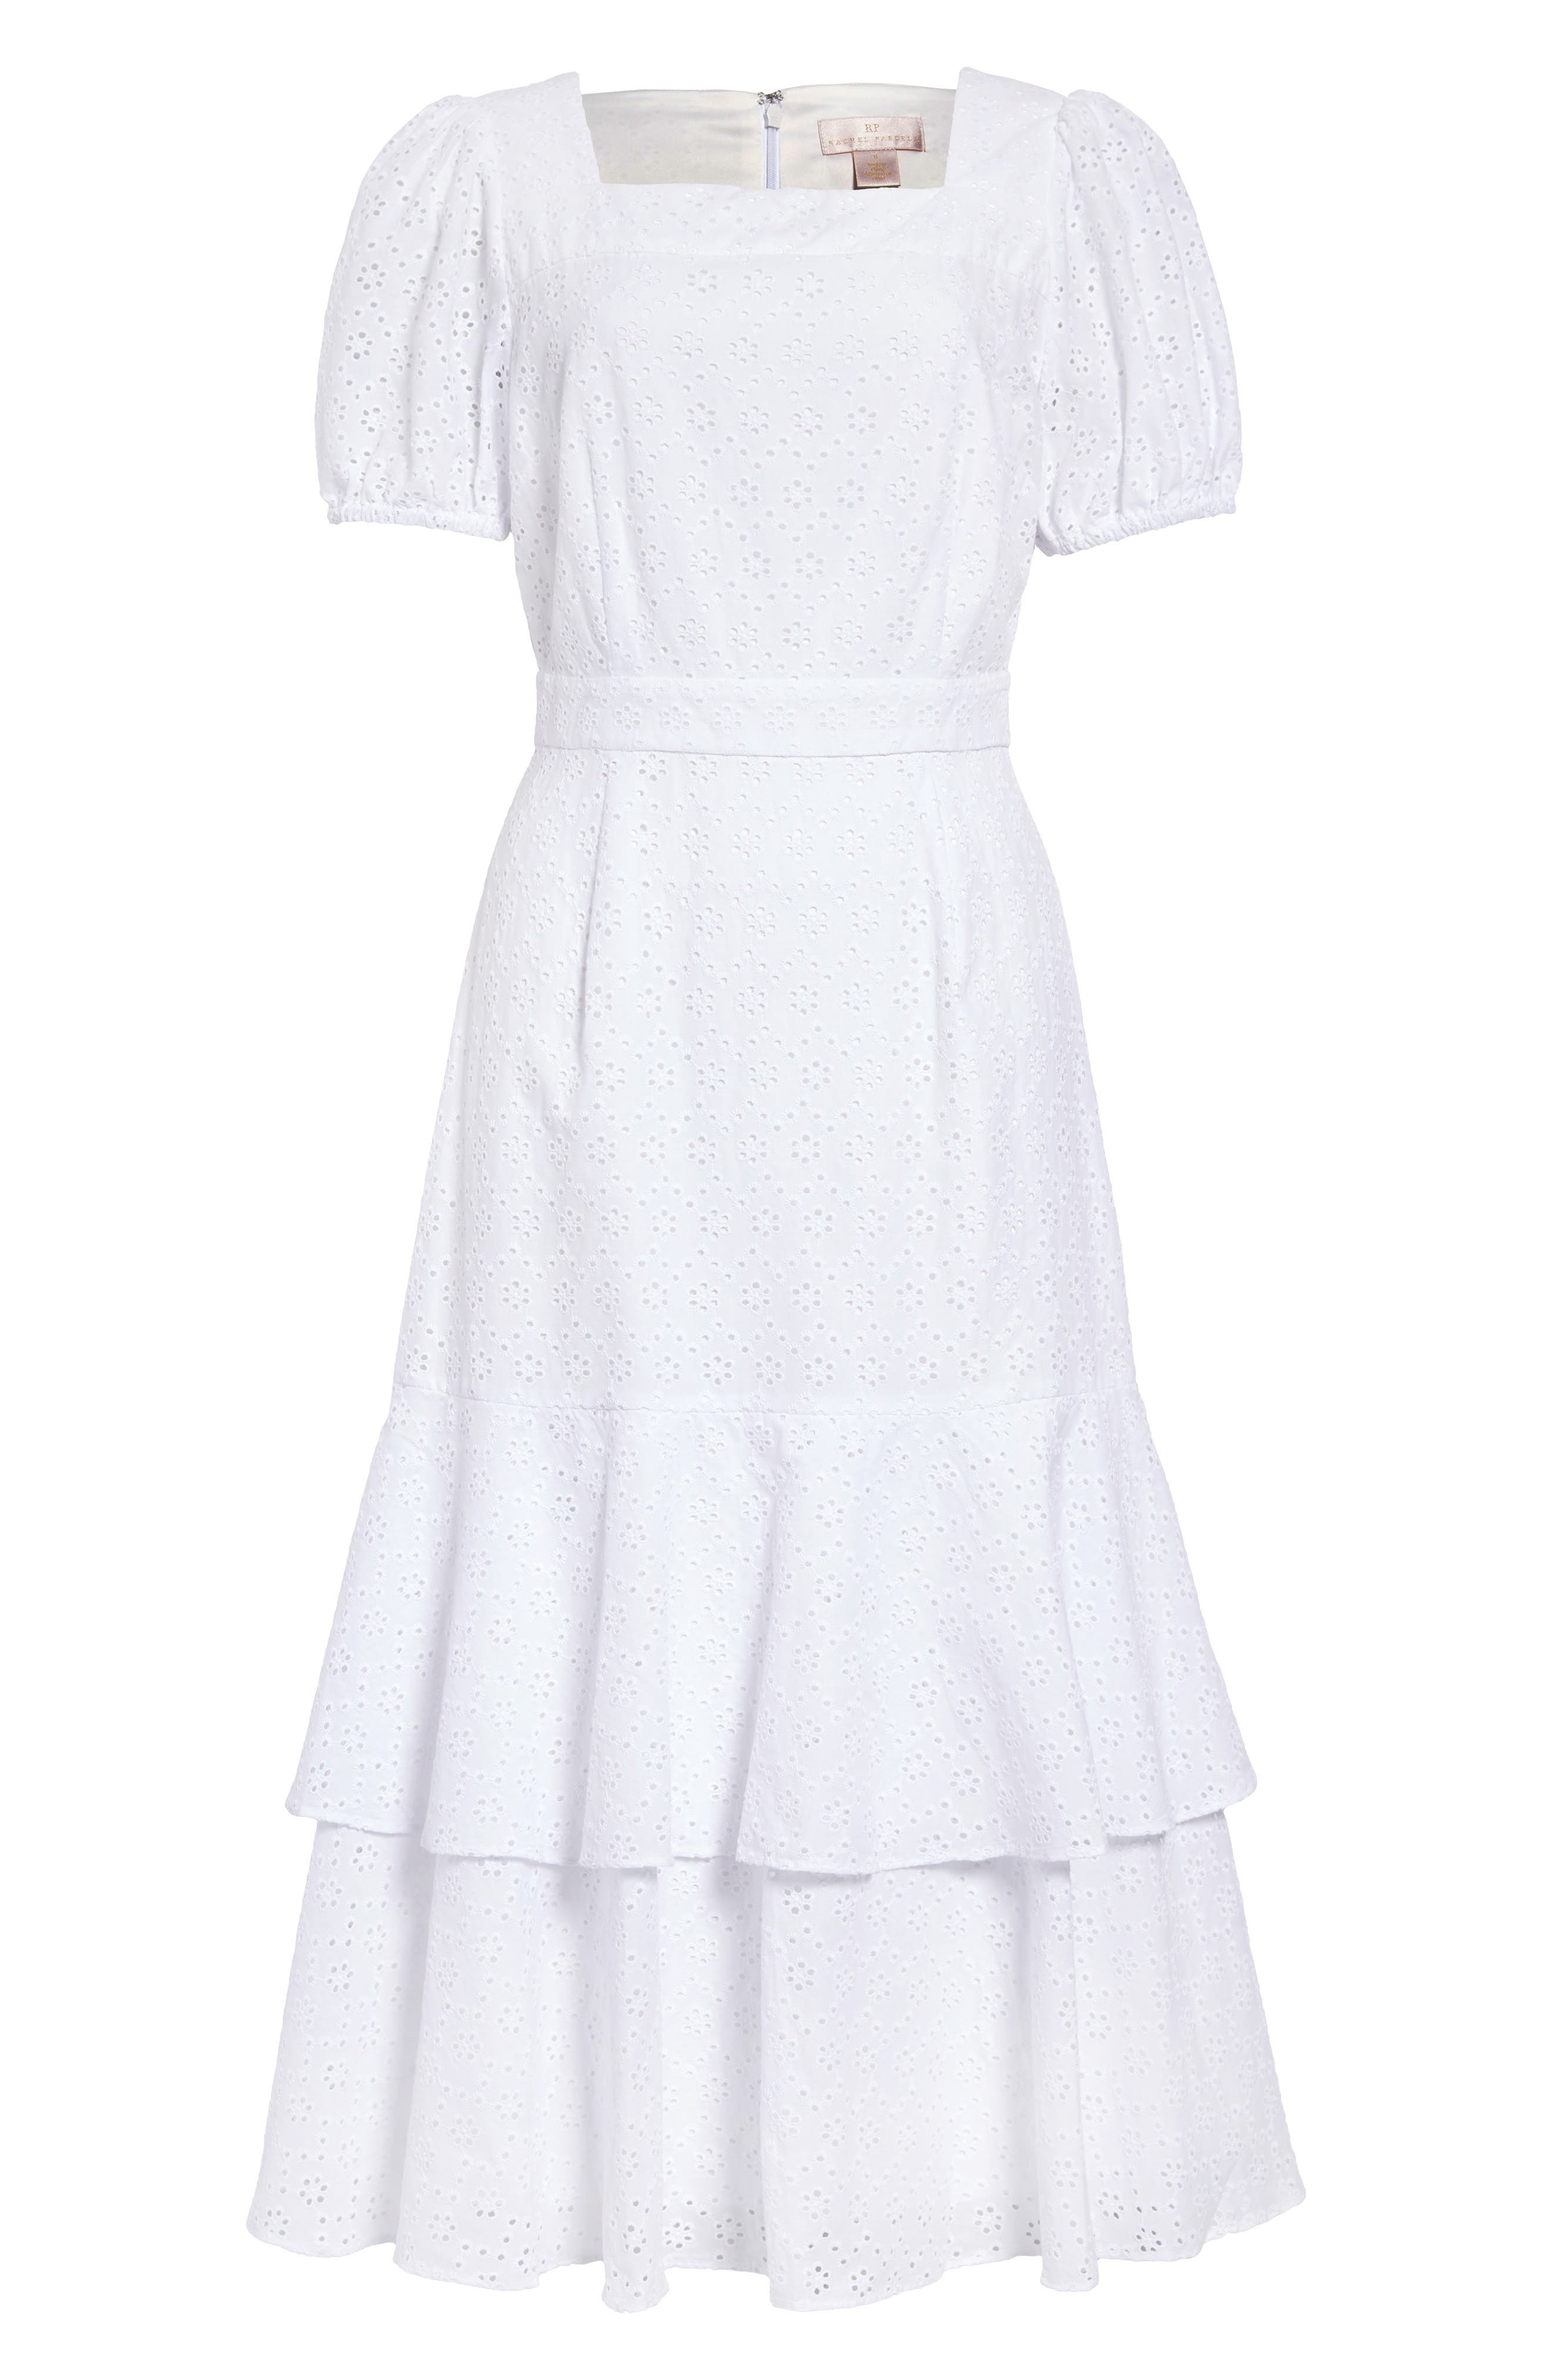 white dresses at nordstrom rack